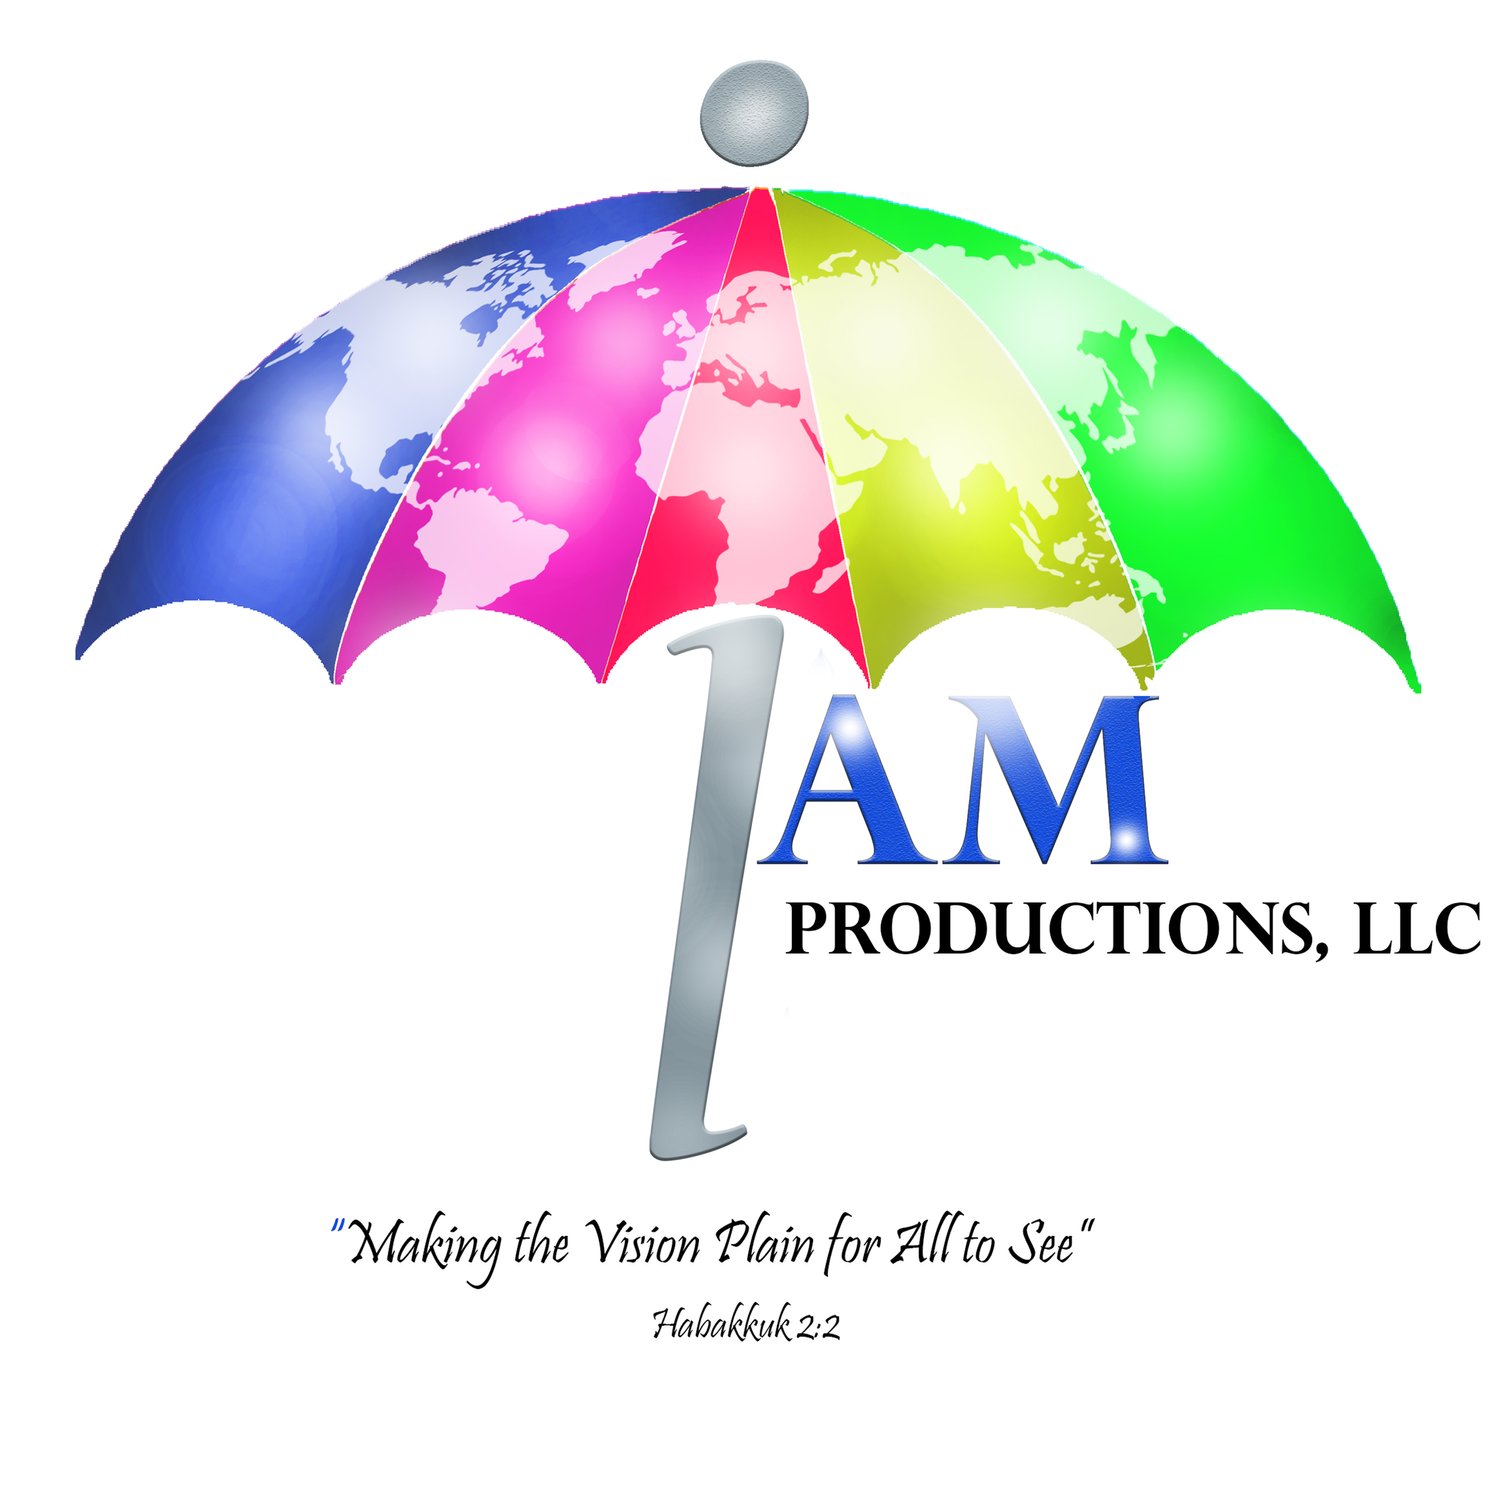 I AM Productions, LLC